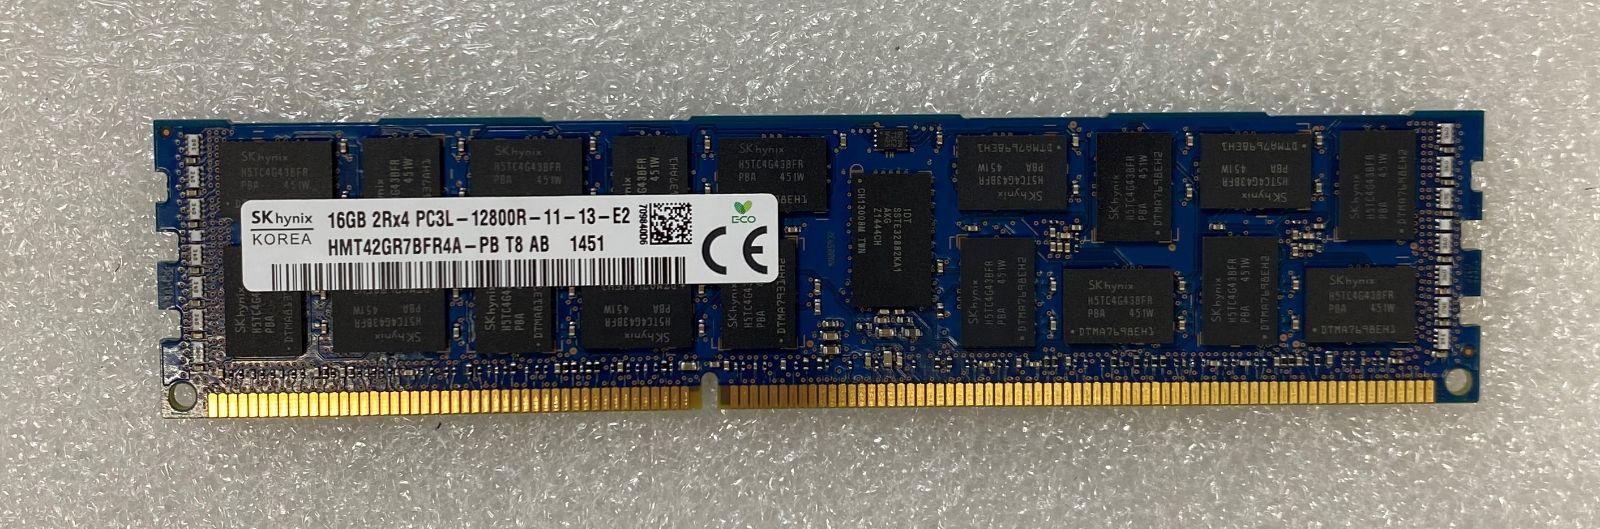 SK hynix 16GB PC3L-12800R サーバー専用メモリー